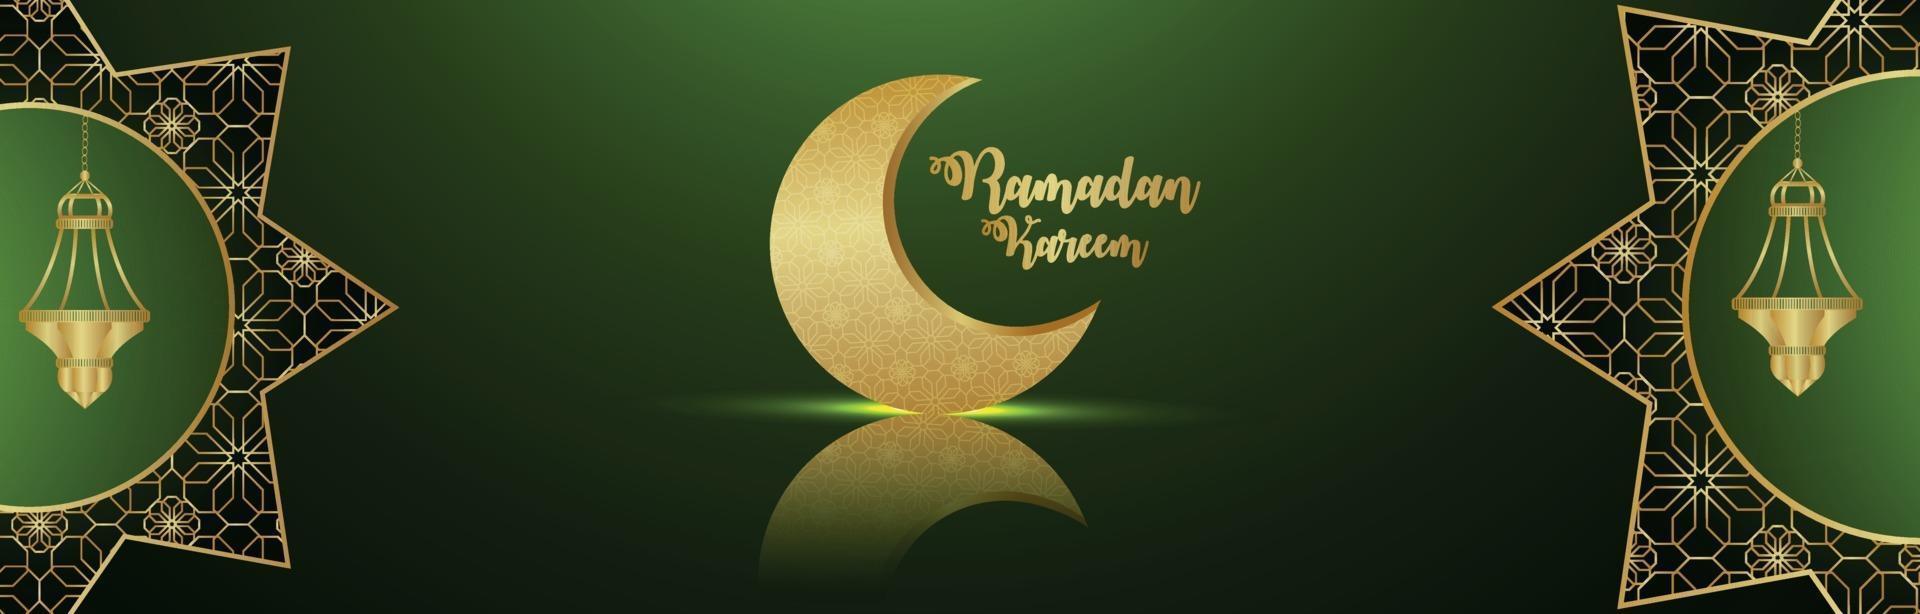 banner ou cabeçalho ramadan kareem com lua dourada e lanterna em fundo verde vetor